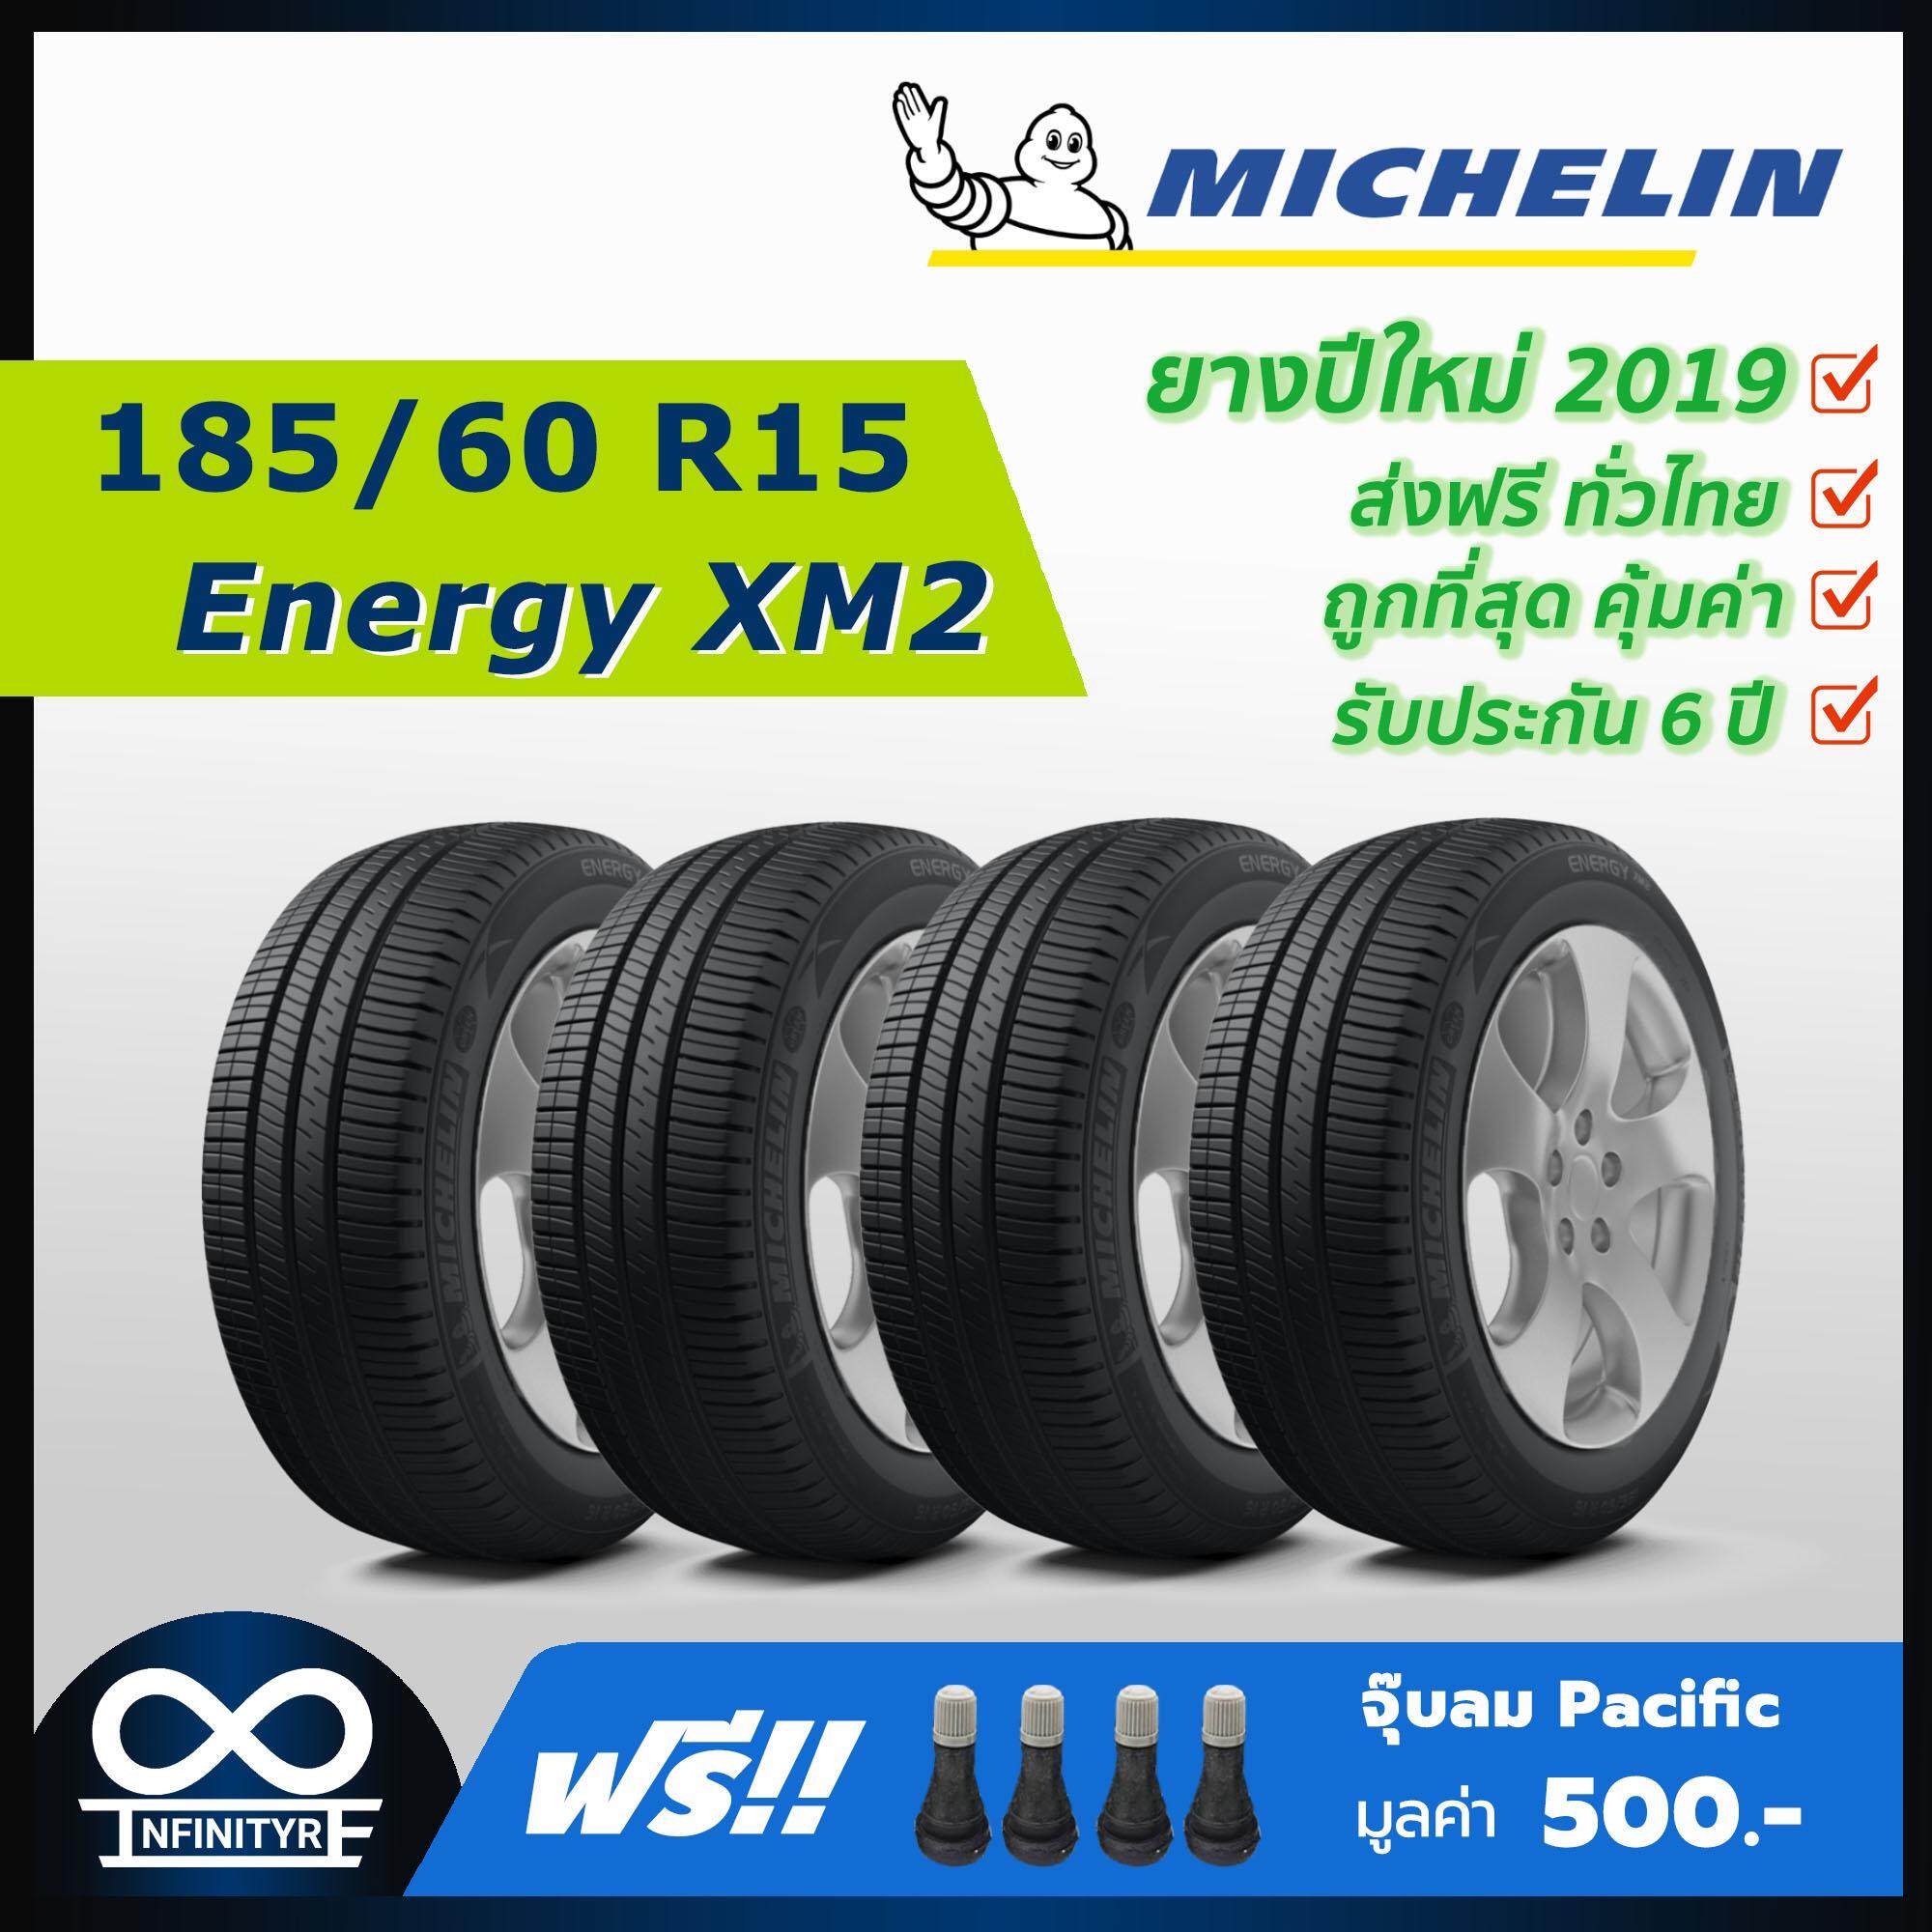 ประกันภัย รถยนต์ ชั้น 3 ราคา ถูก เพชรบุรี 185/60R15 Michelin รุ่น Energy XM2 (ปี2019) 4เส้น (ฟรี! จุ๊บลมPacific เกรดพรีเมี่ยม)